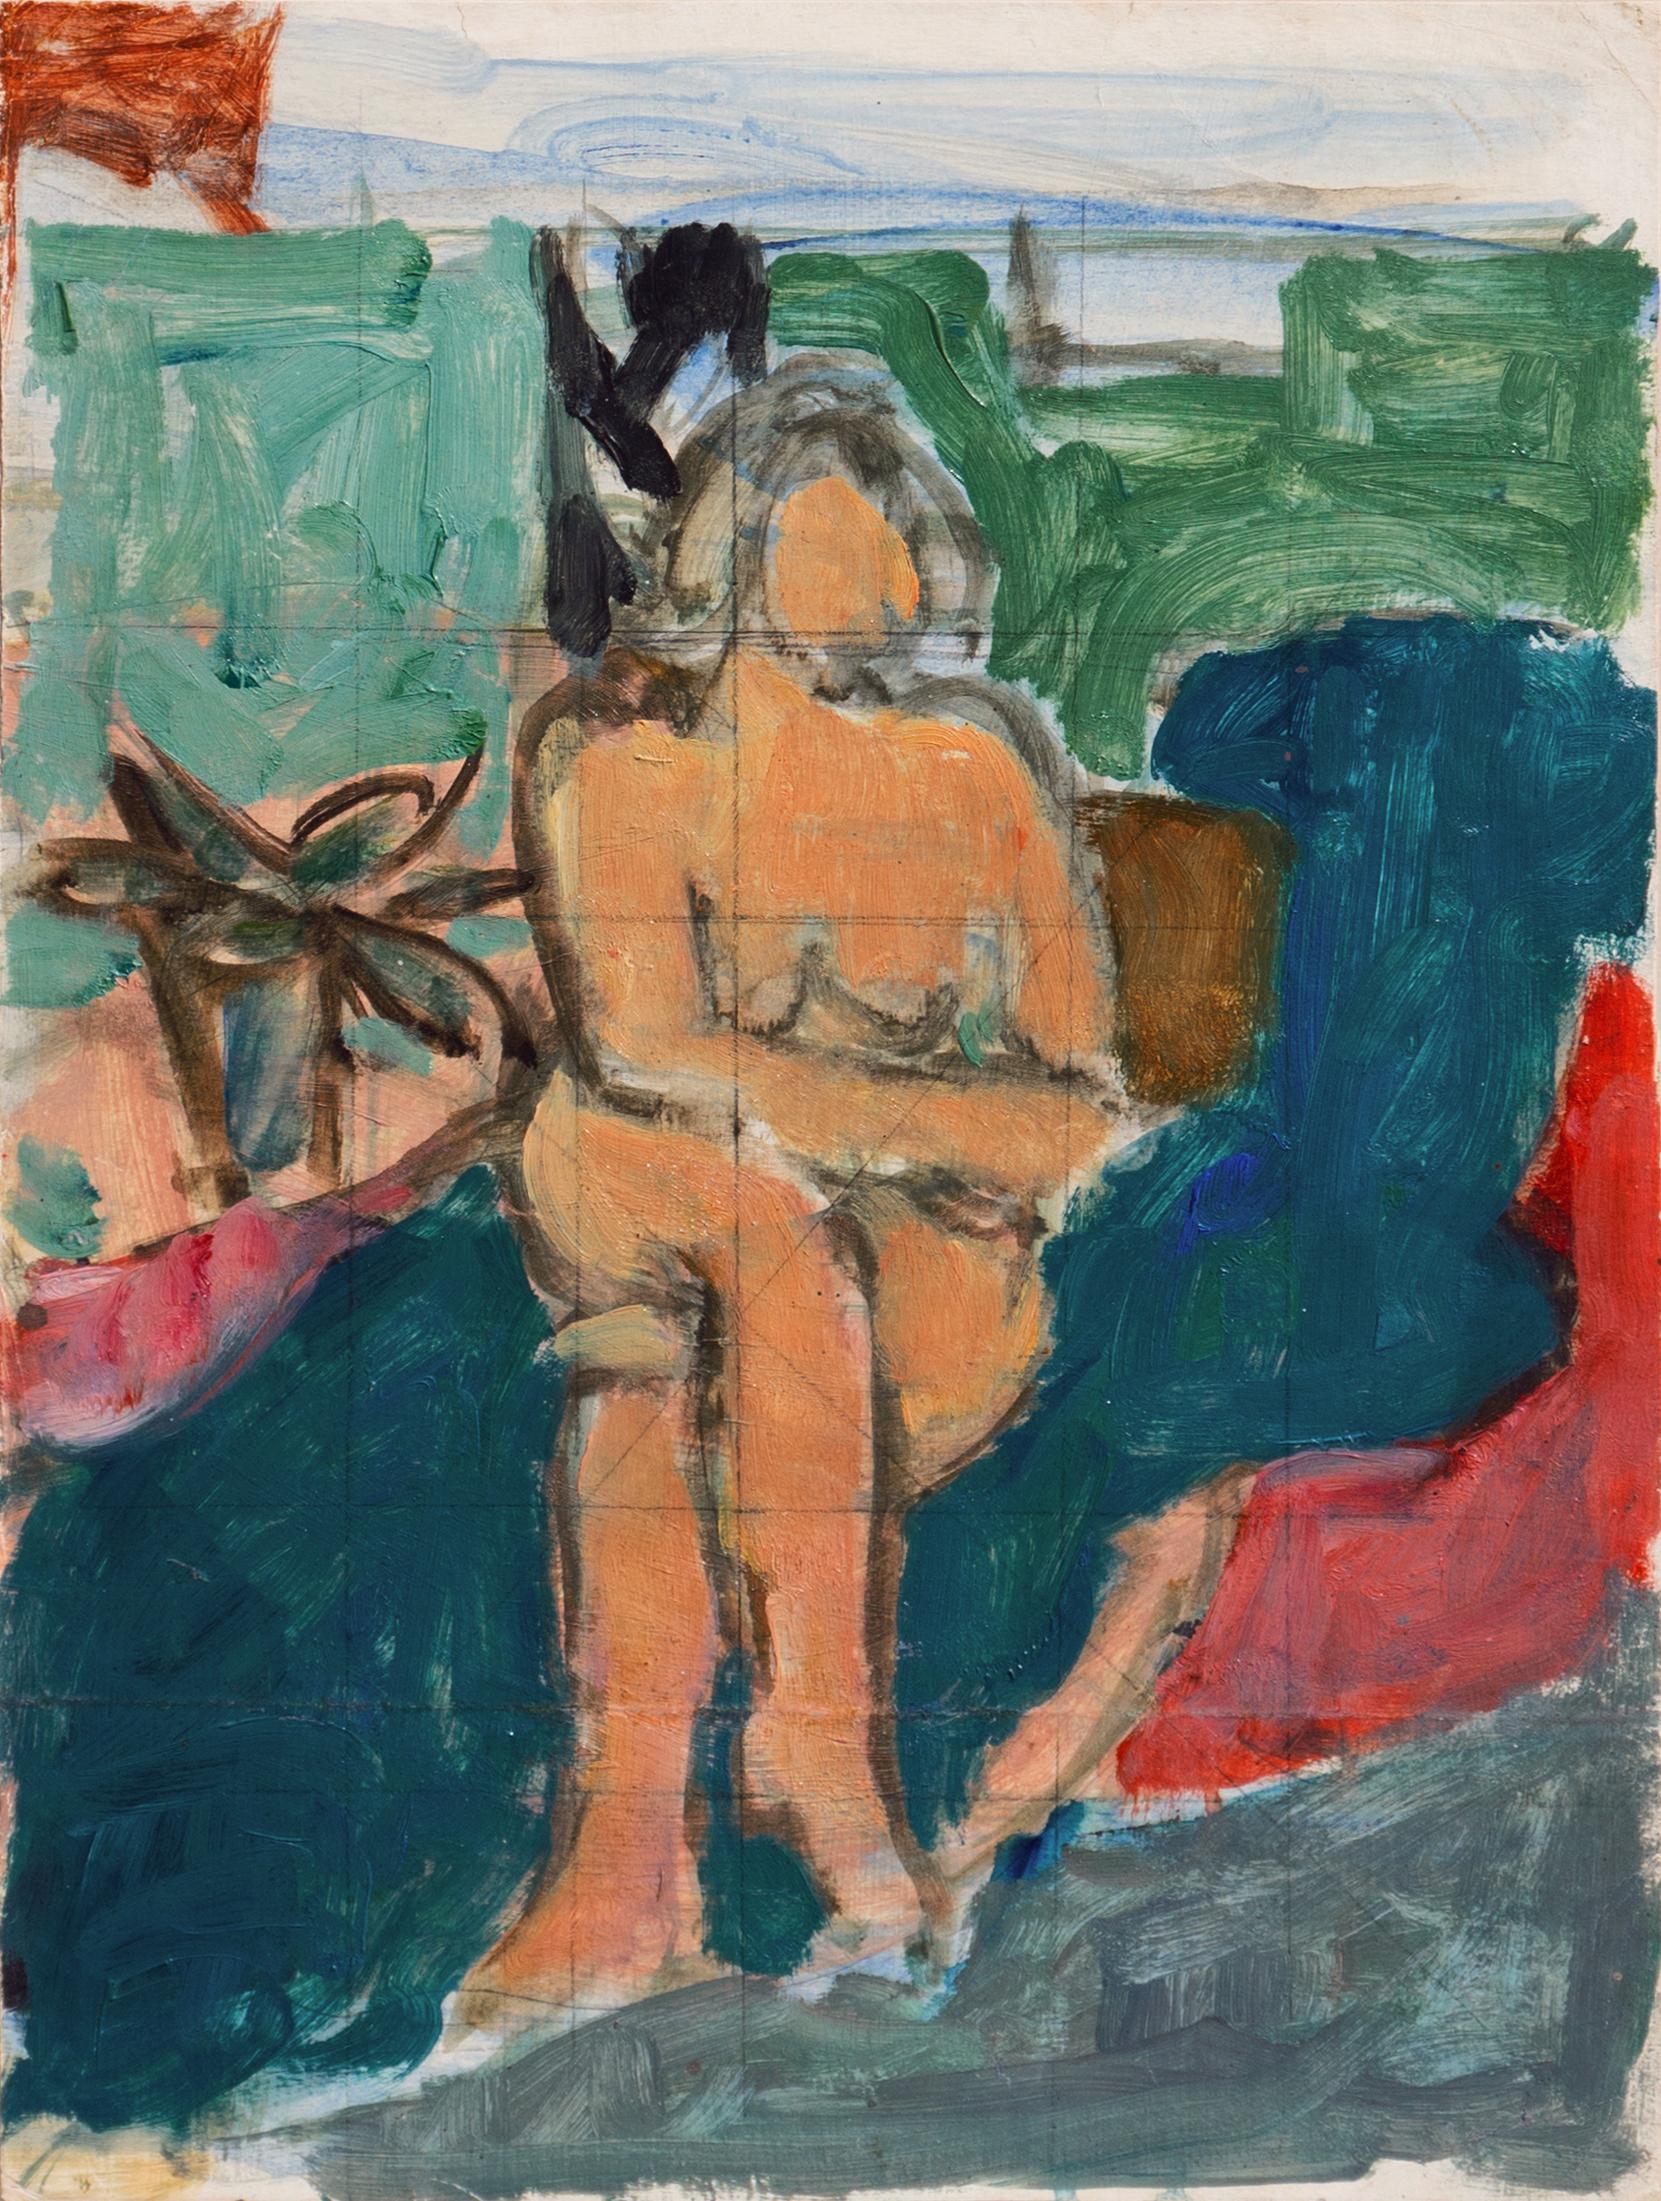 Victor Di Gesu Nude Painting - 'Seated Nude', Paris, Louvre, Salon d'Automne, Académie Chaumière, SFAA, LACMA